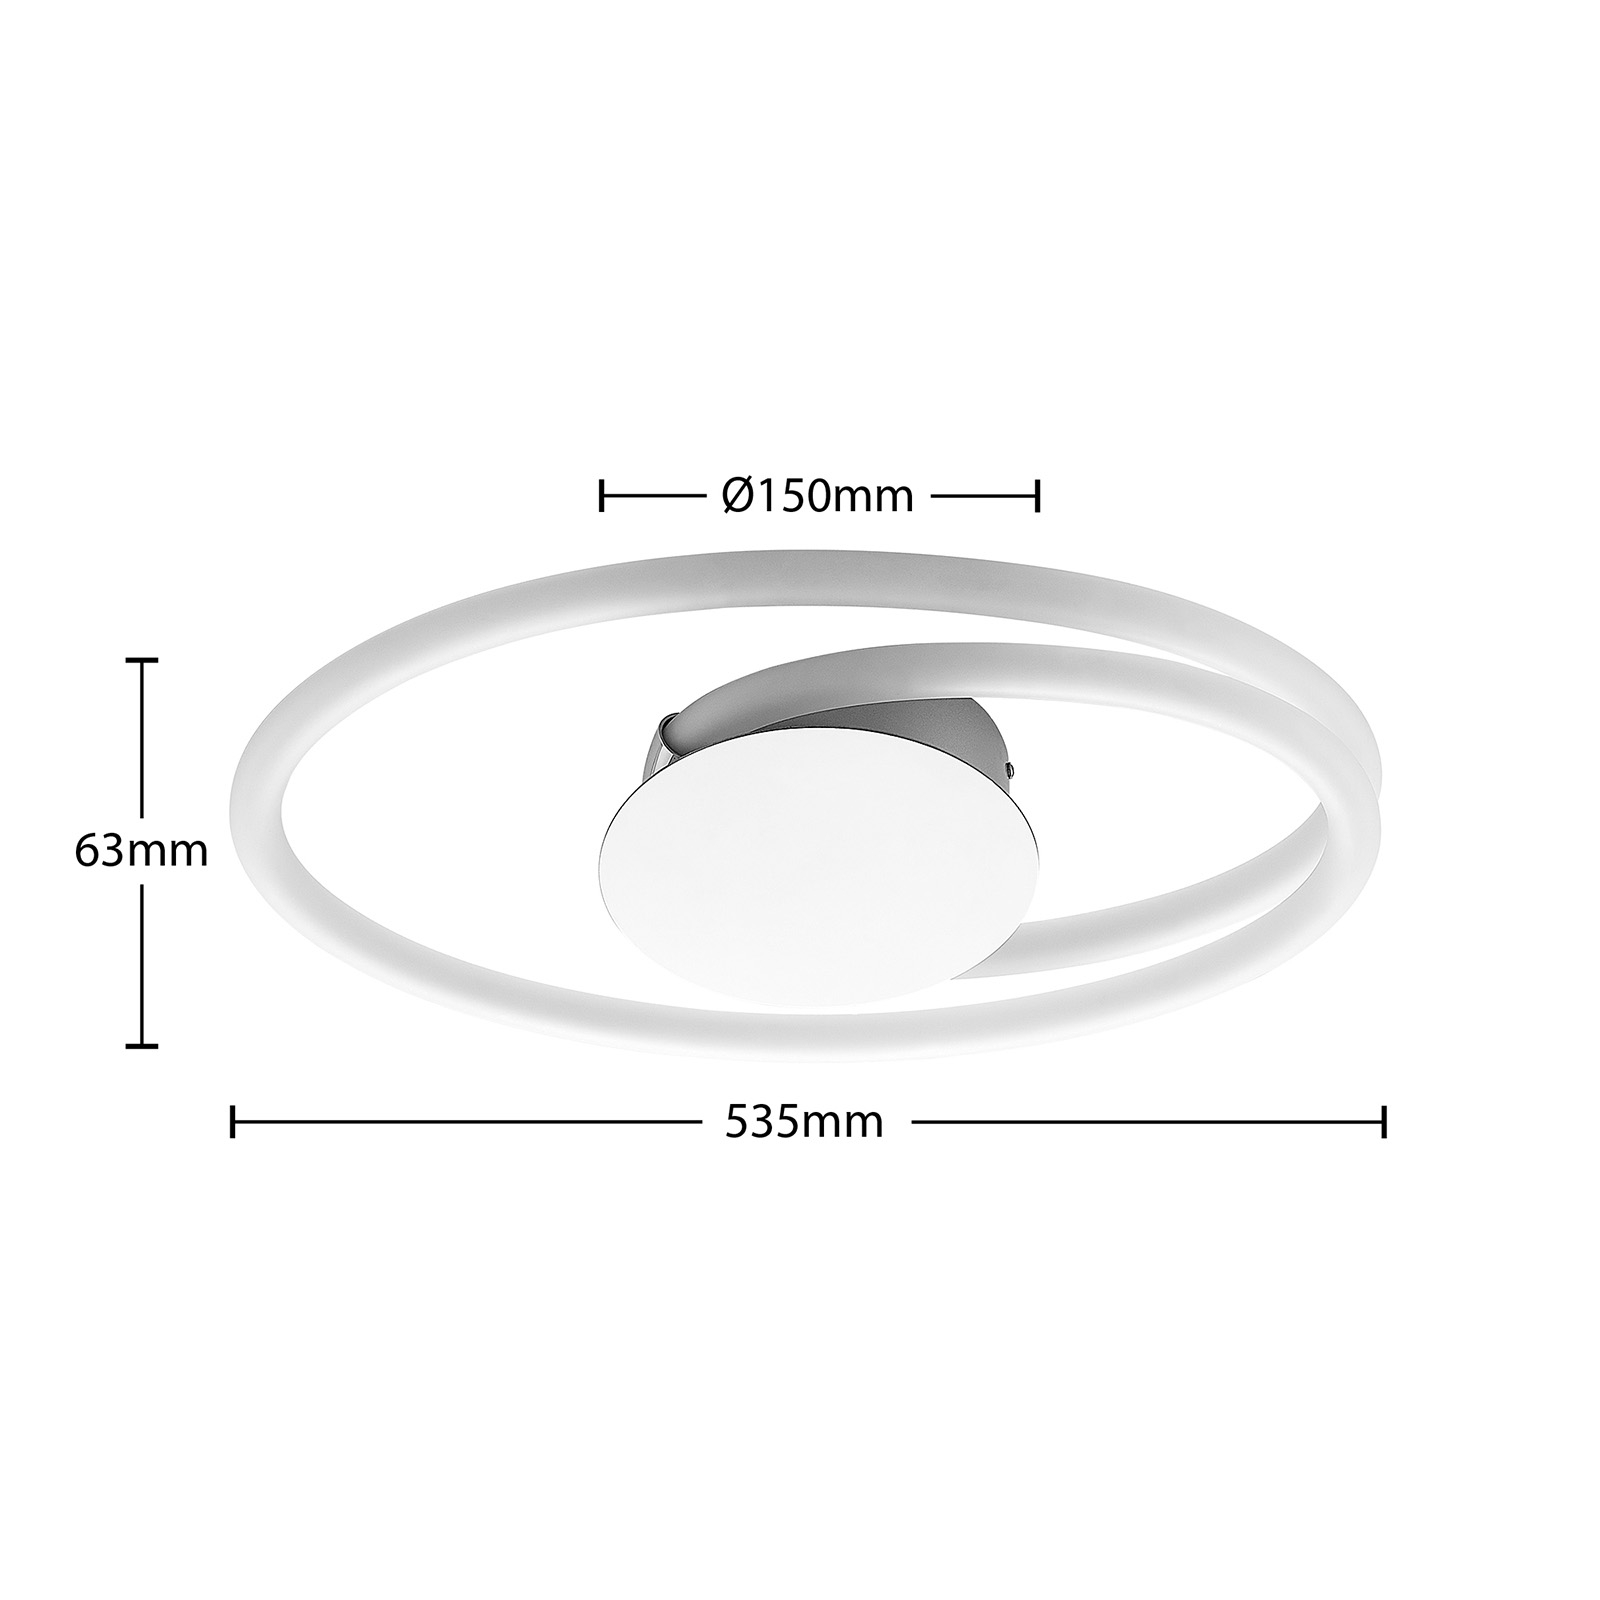 Lucande Ovala plafonnier LED, 53 cm